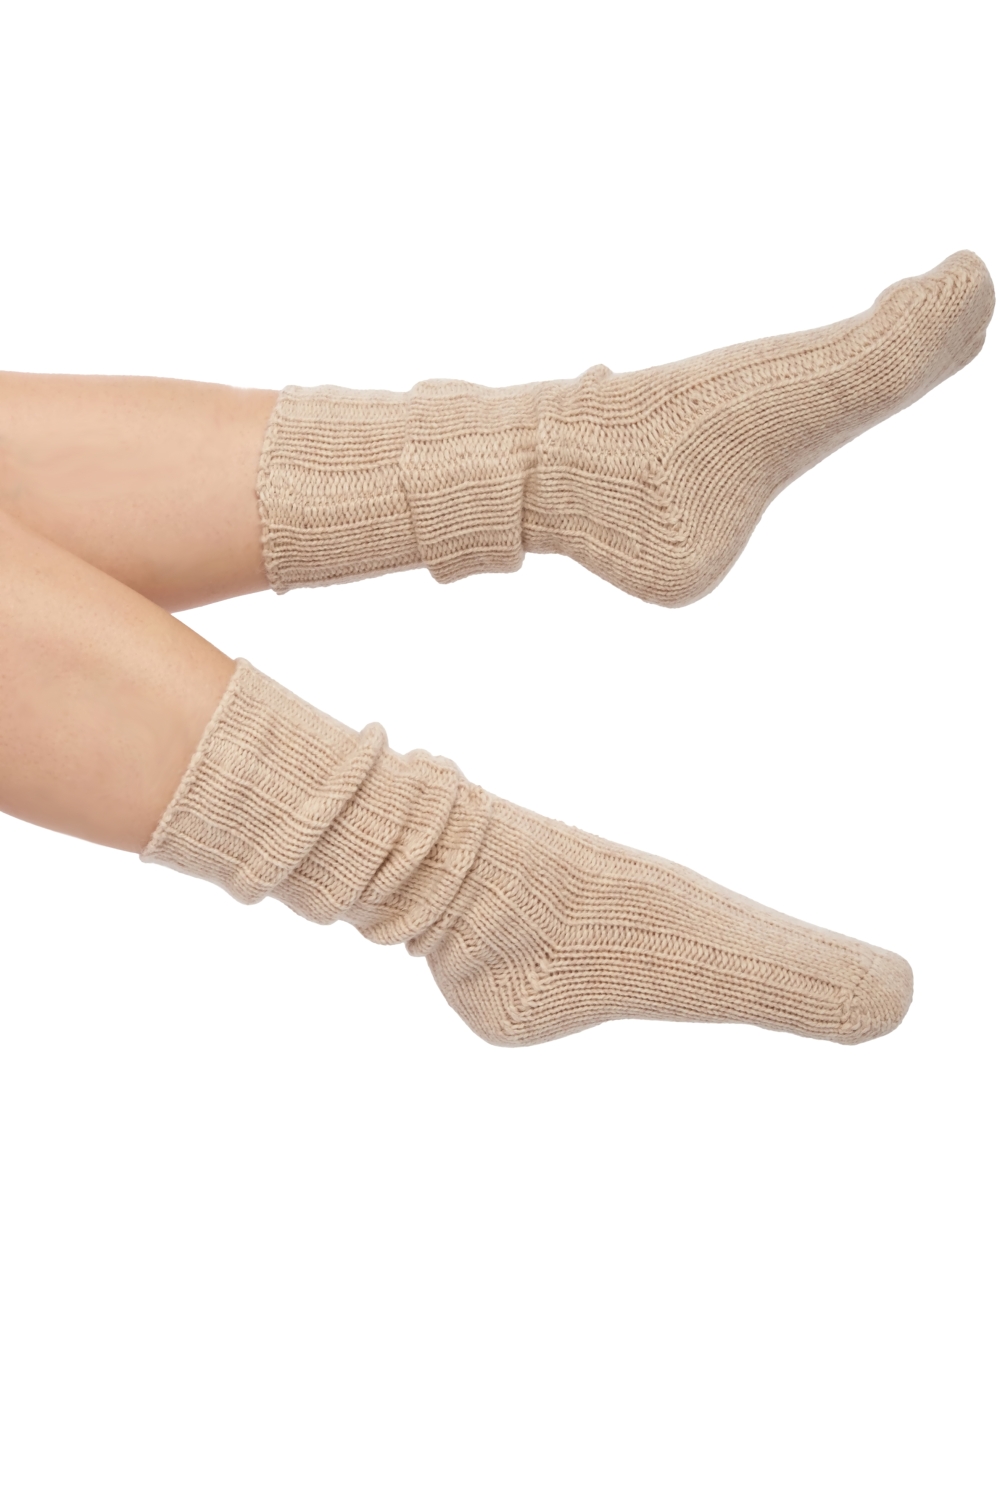 Kameel accessoires sokken vilnius nature een maat